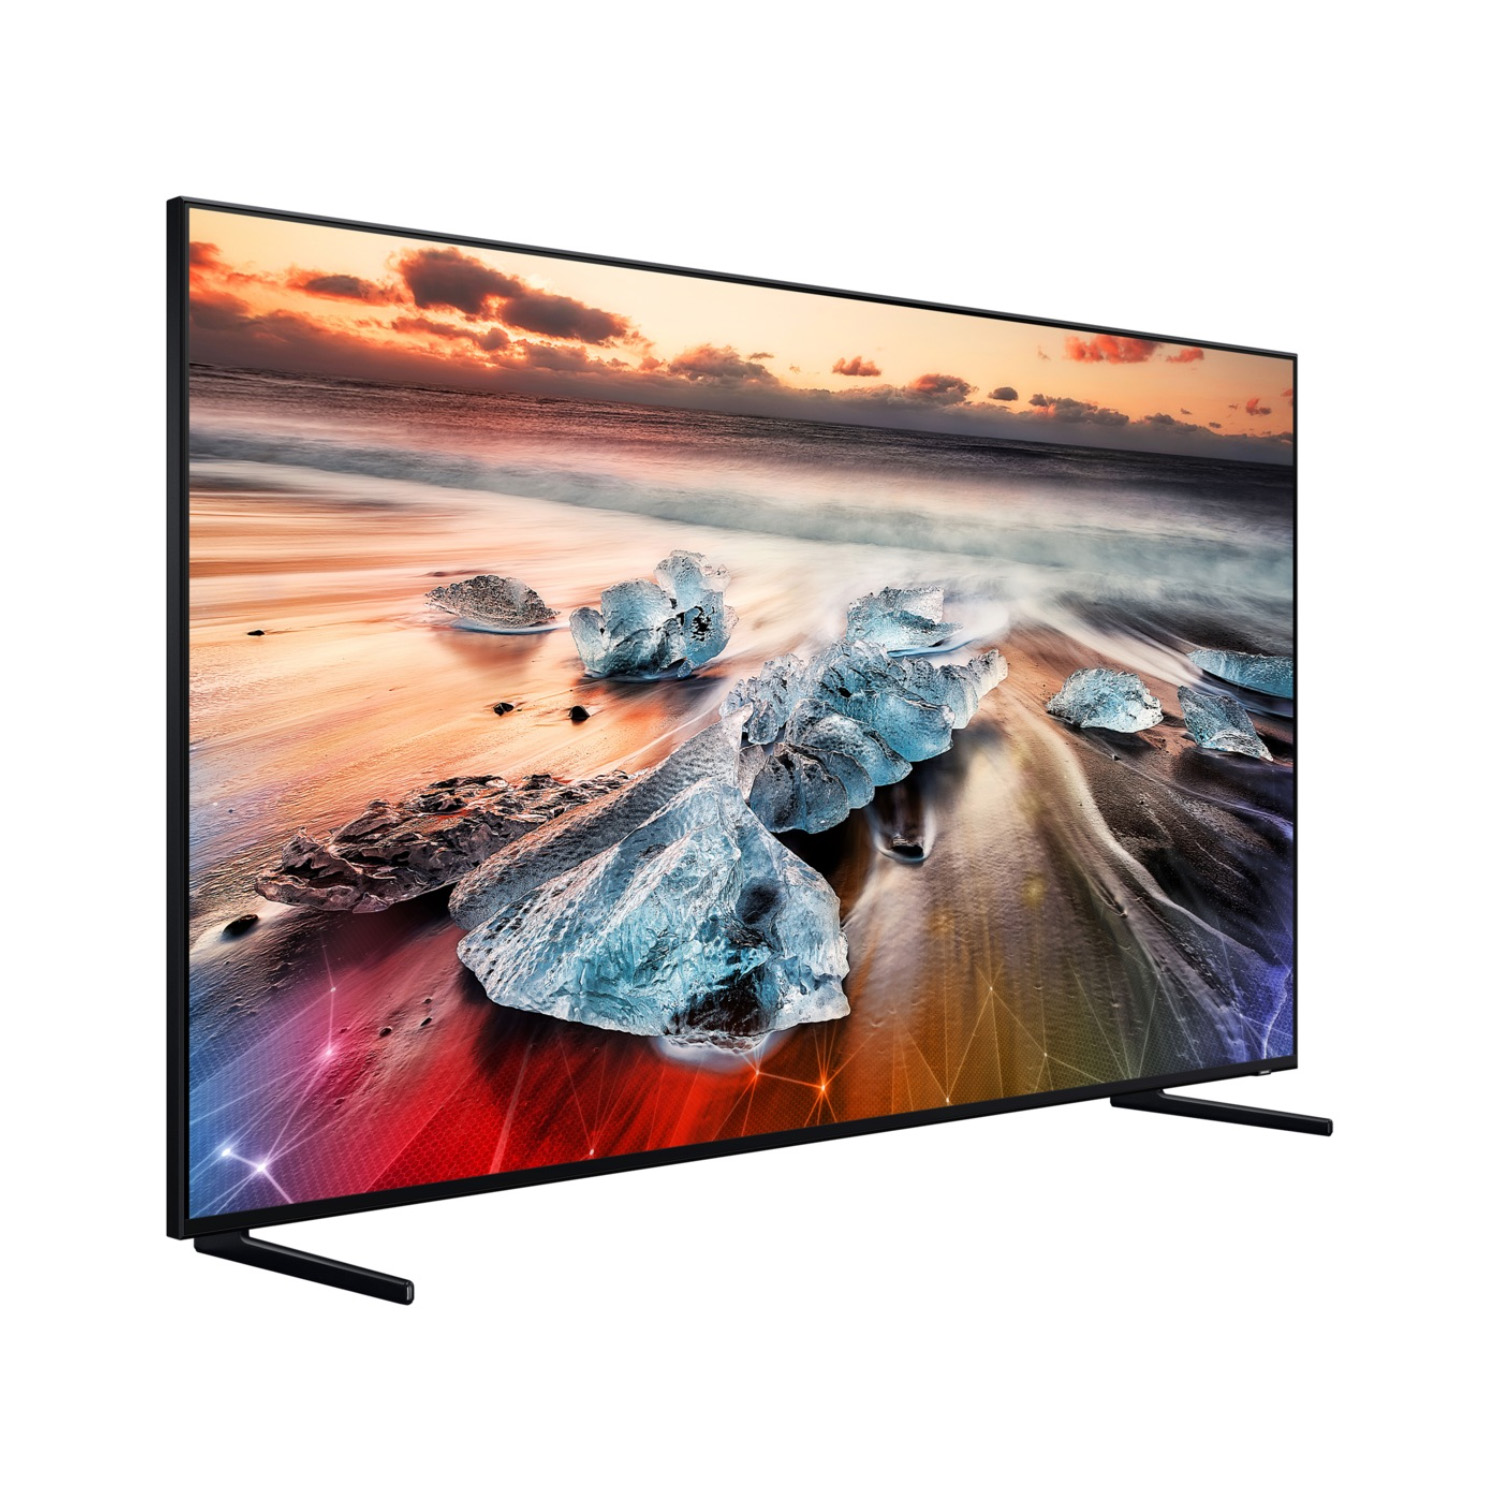 Buy Samsung 82 Inch 8K QLED Smart TV Online in Kuwait, Best Price at ...